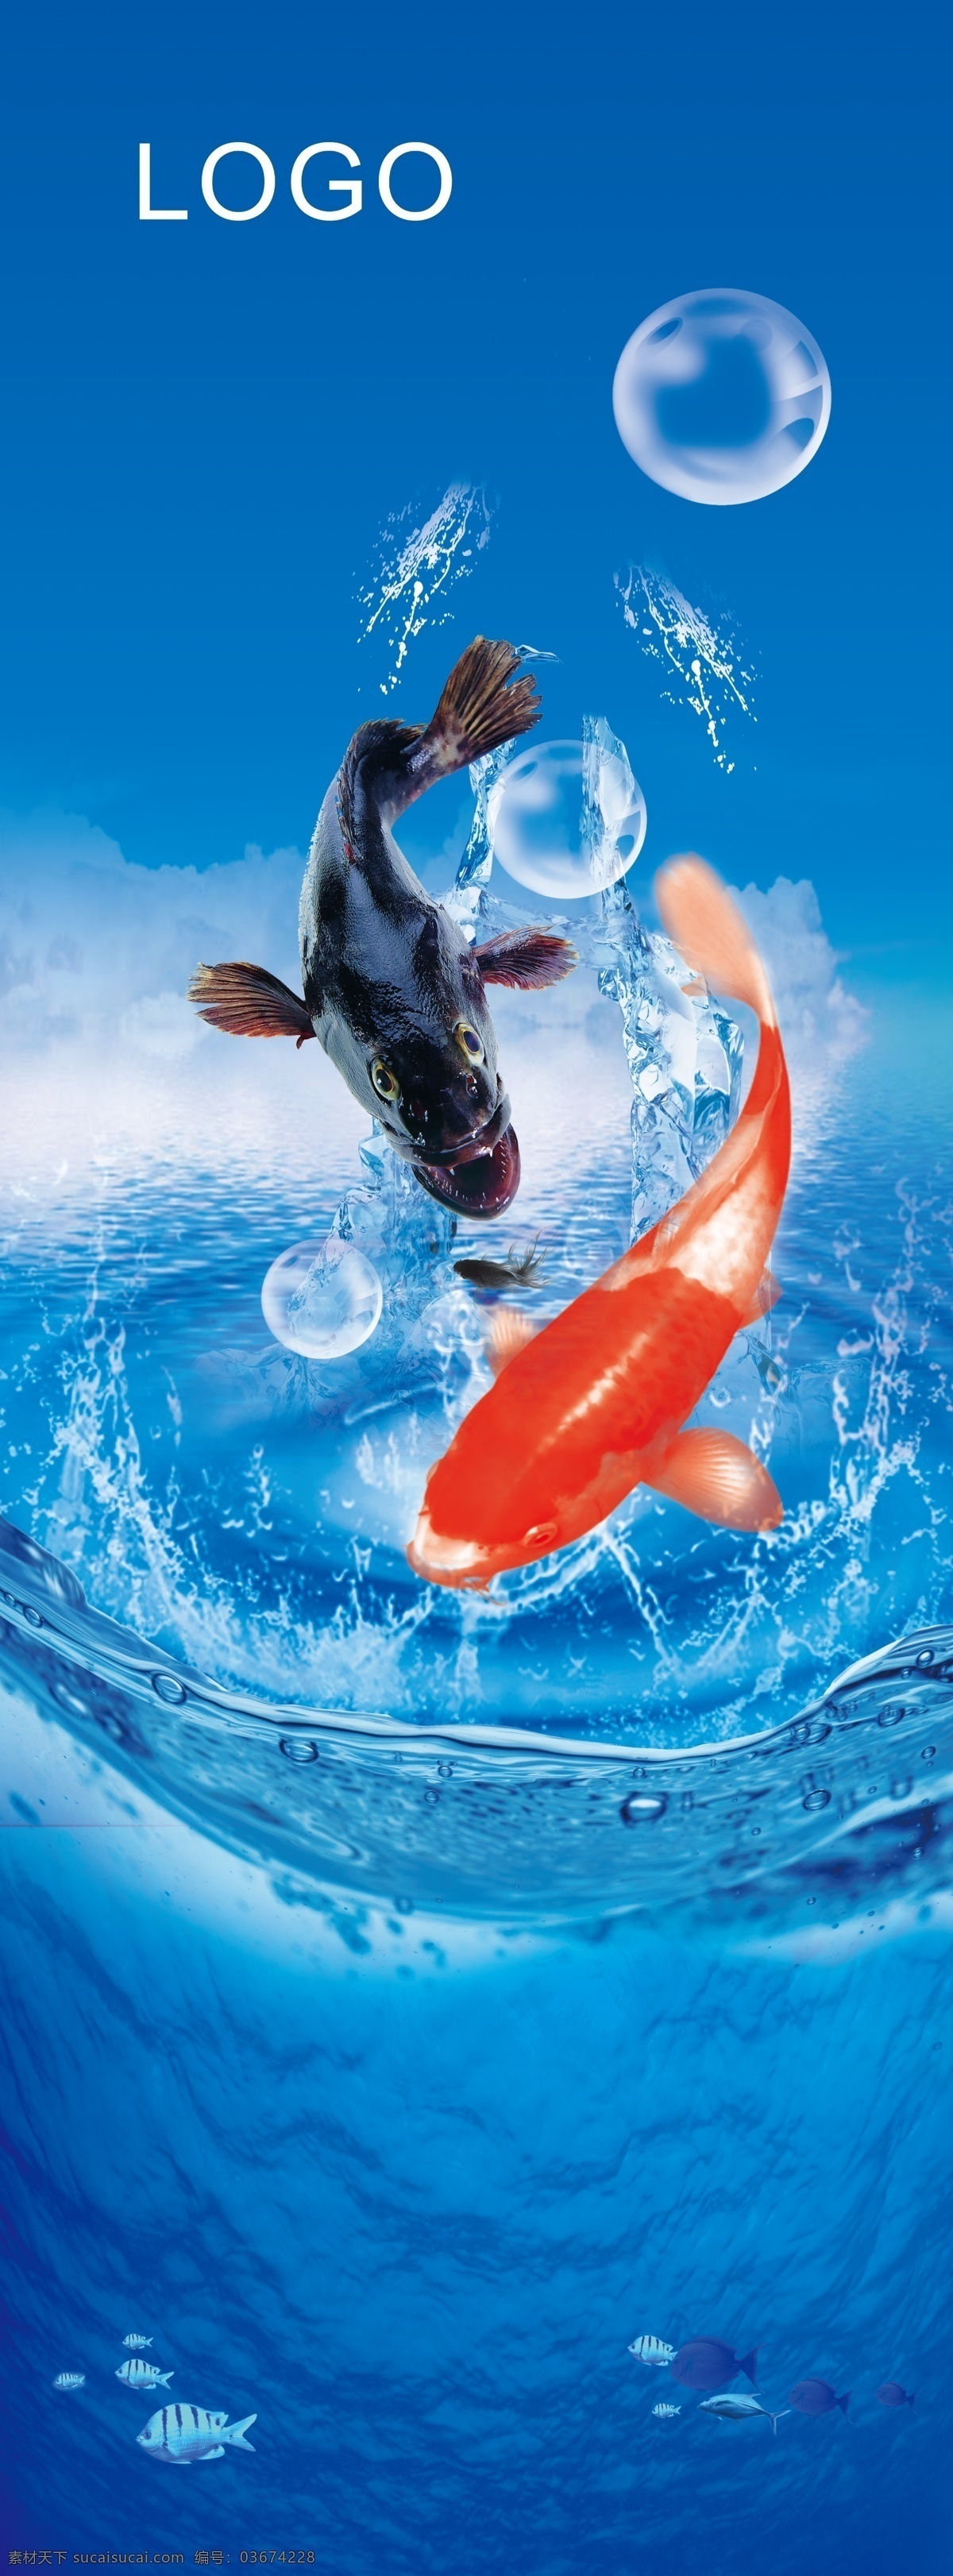 精品鱼 鱼 水花 蓝色背景 海鲜 水产 海产品 水泡 店 户外 宣传 广告设计模板 源文件